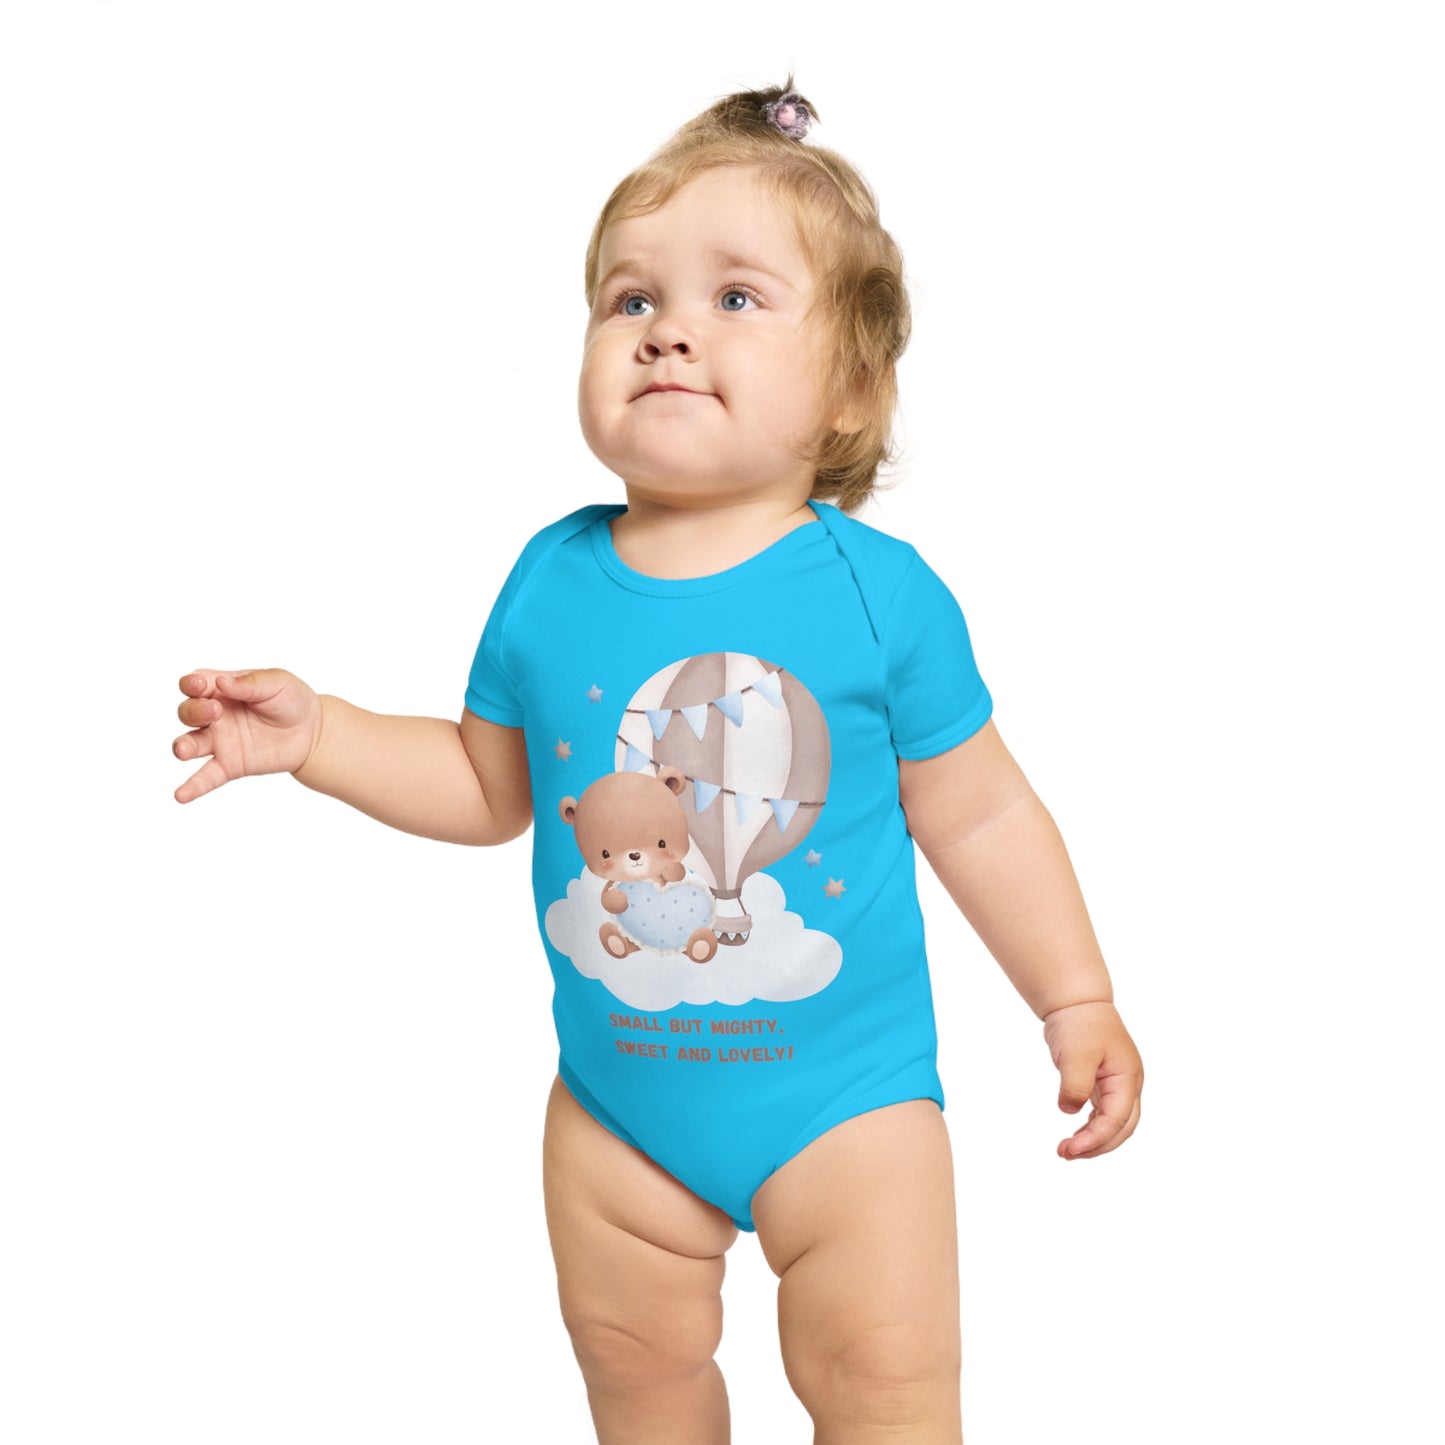 Short Sleeve Baby Bodysuit